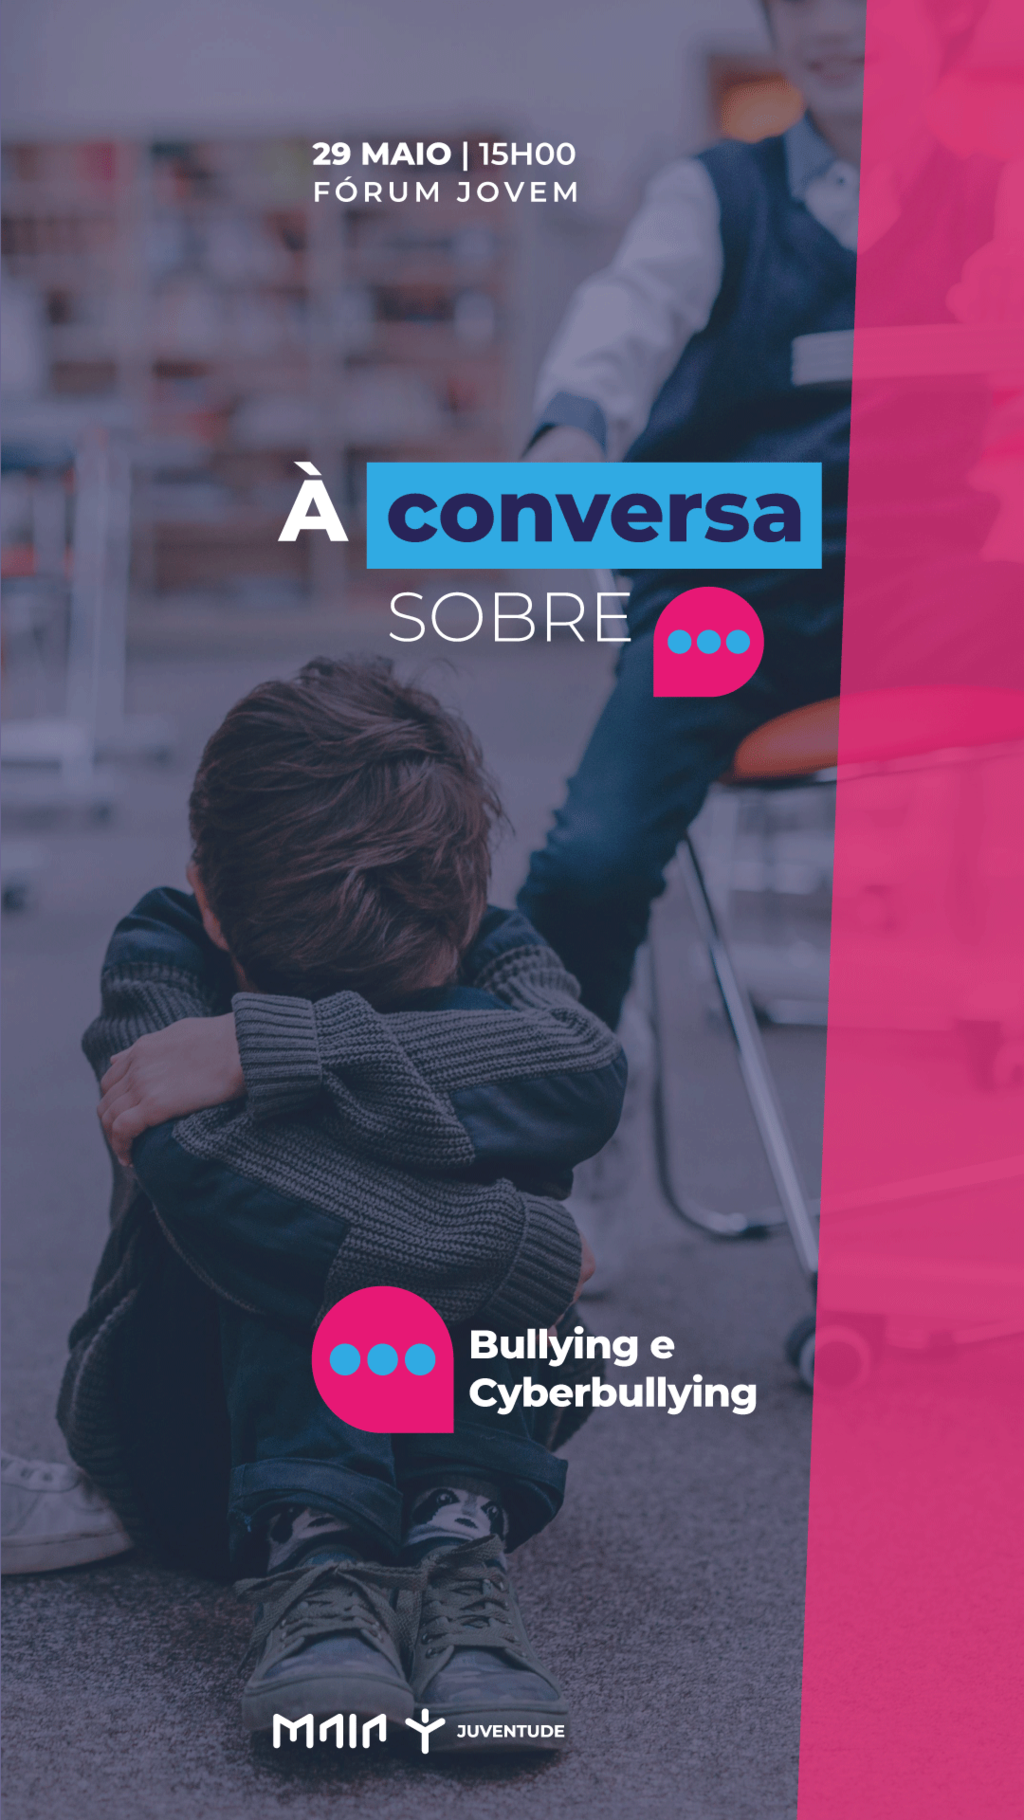 À conversa sobre... Bullying e Cyberbullying